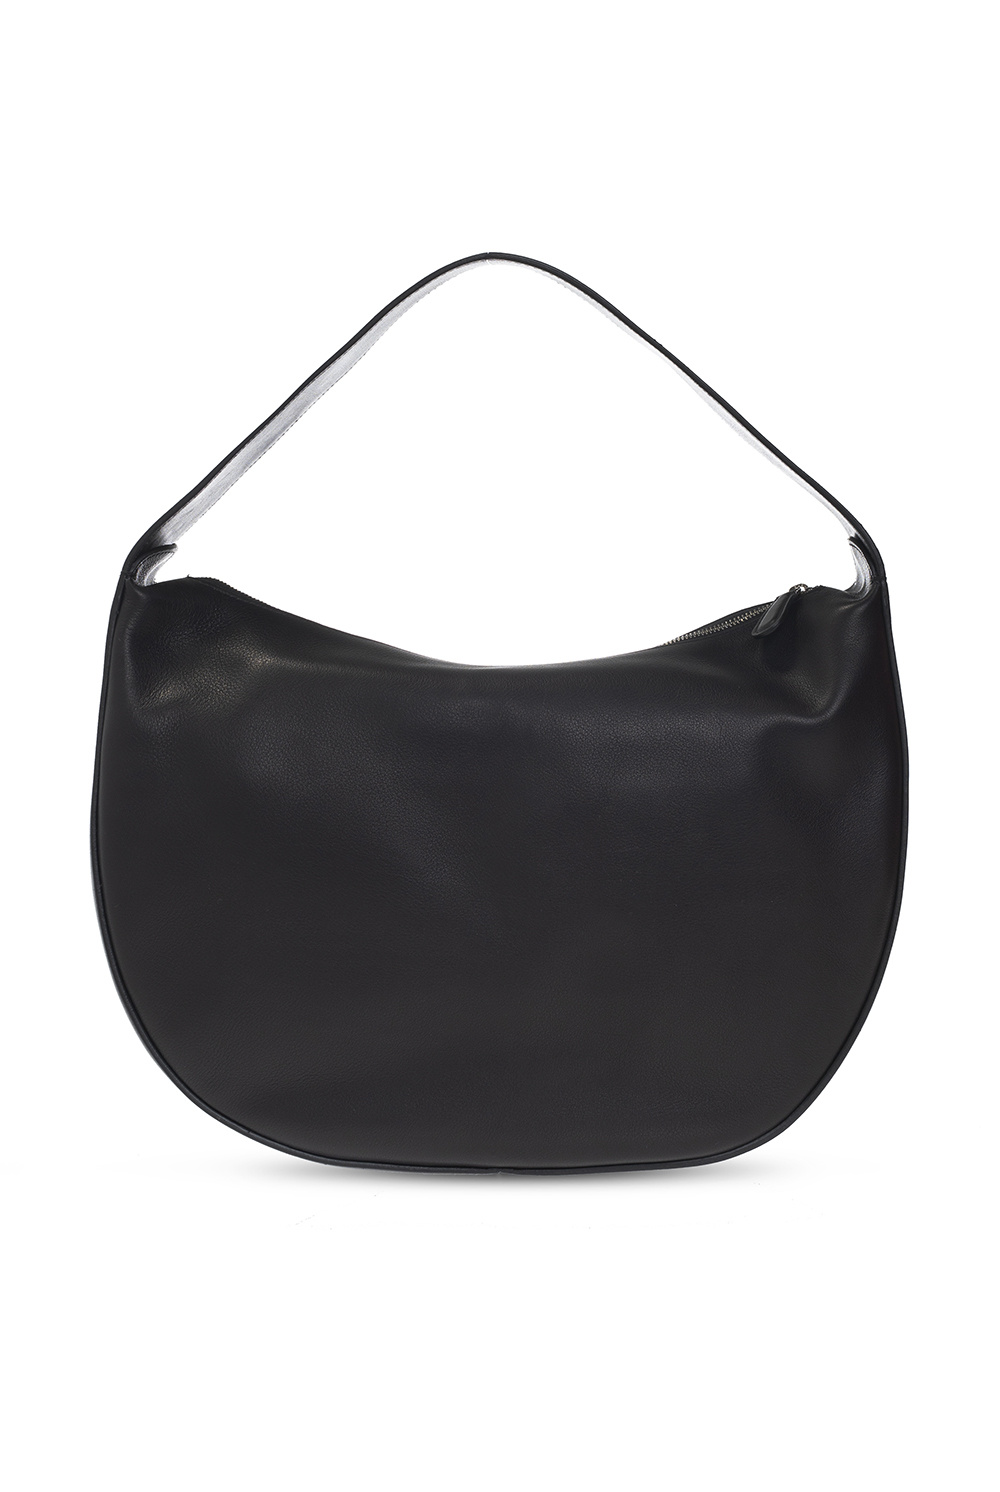 The Row 'Allie’ handbag